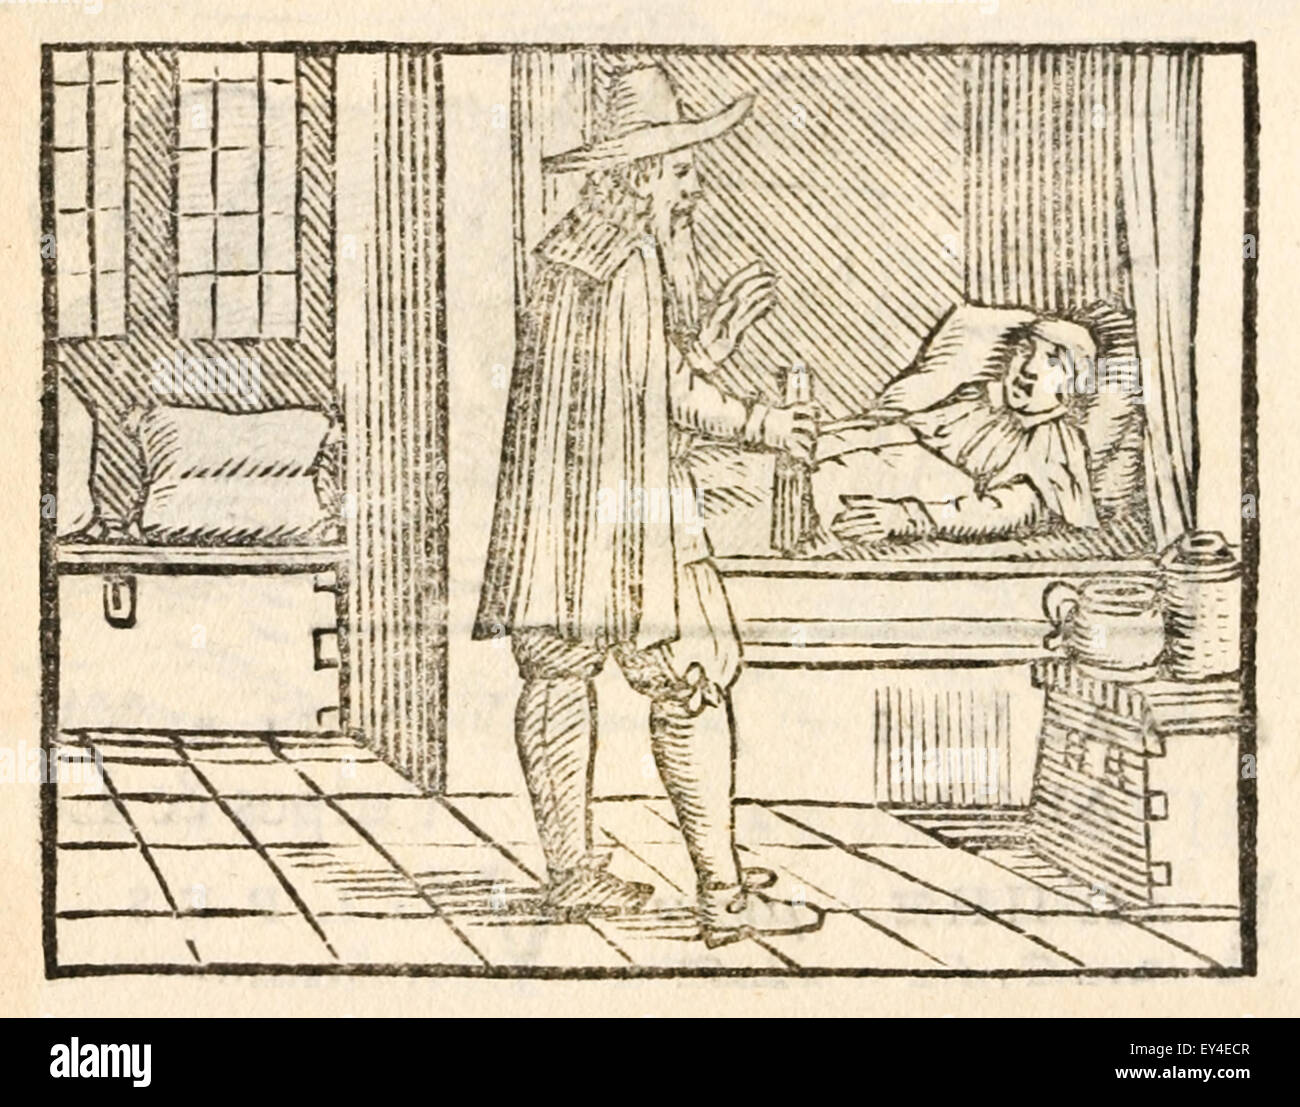 "Die alte Frau und der Arzt" Fabel von Aesop (ca. 600). 17. Jahrhundert Holzschnitt Drucken zur Veranschaulichung Aesop Fabeln. Siehe Beschreibung für mehr Informationen. Stockfoto